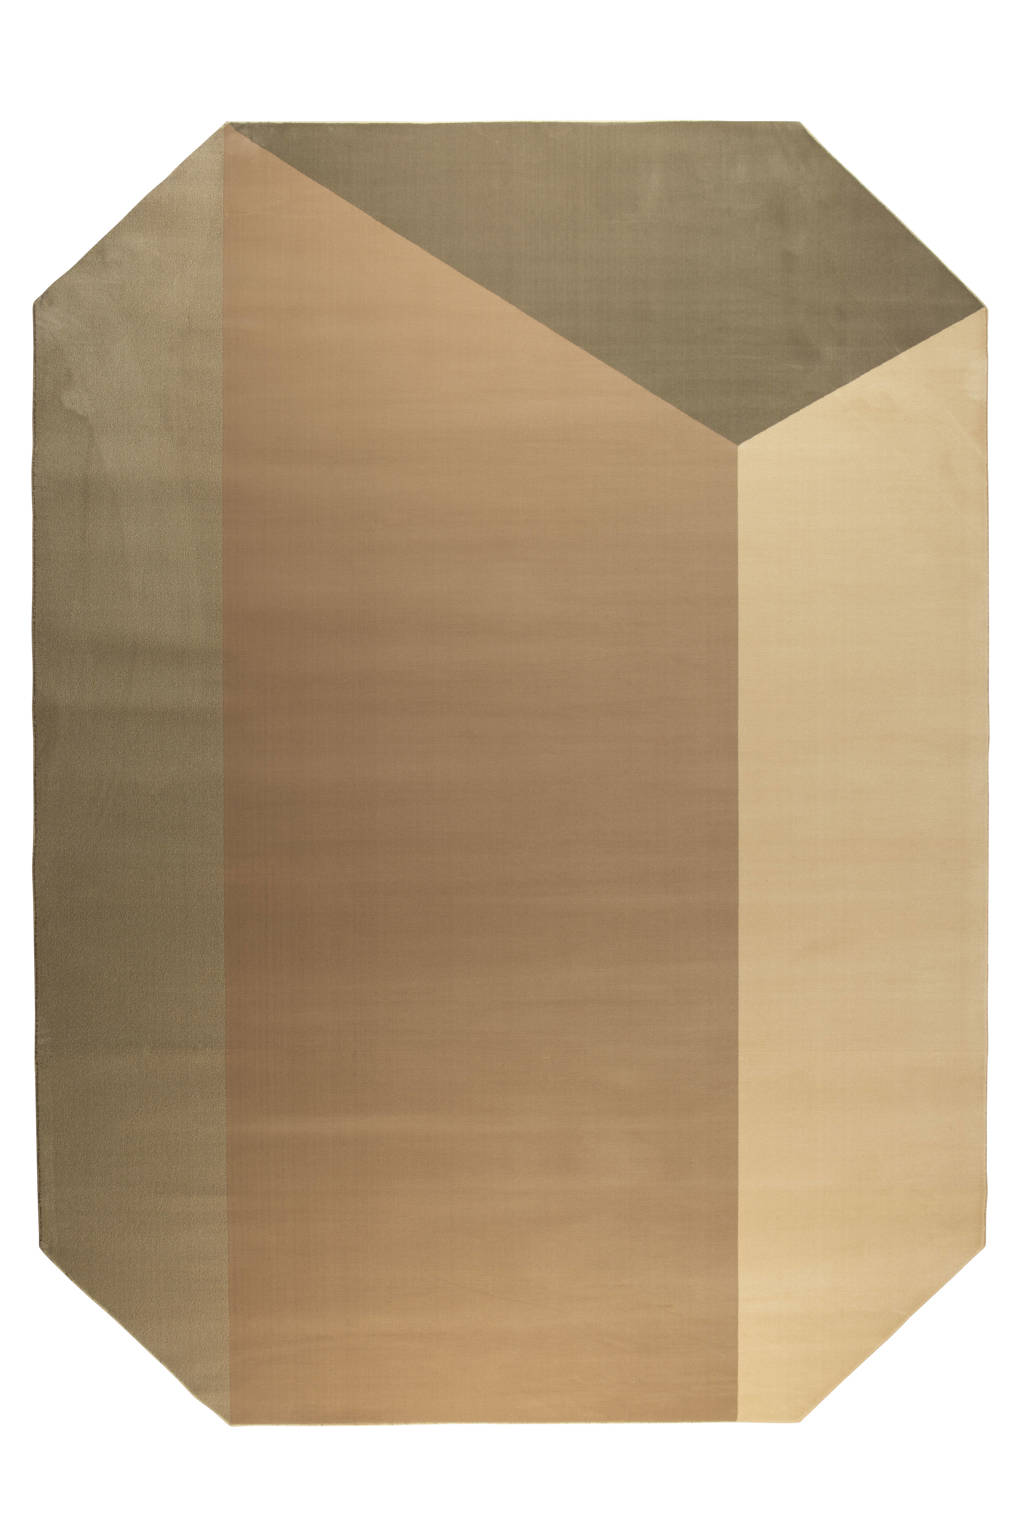 Zuiver vloerkleed Harmony  (230x160 cm)